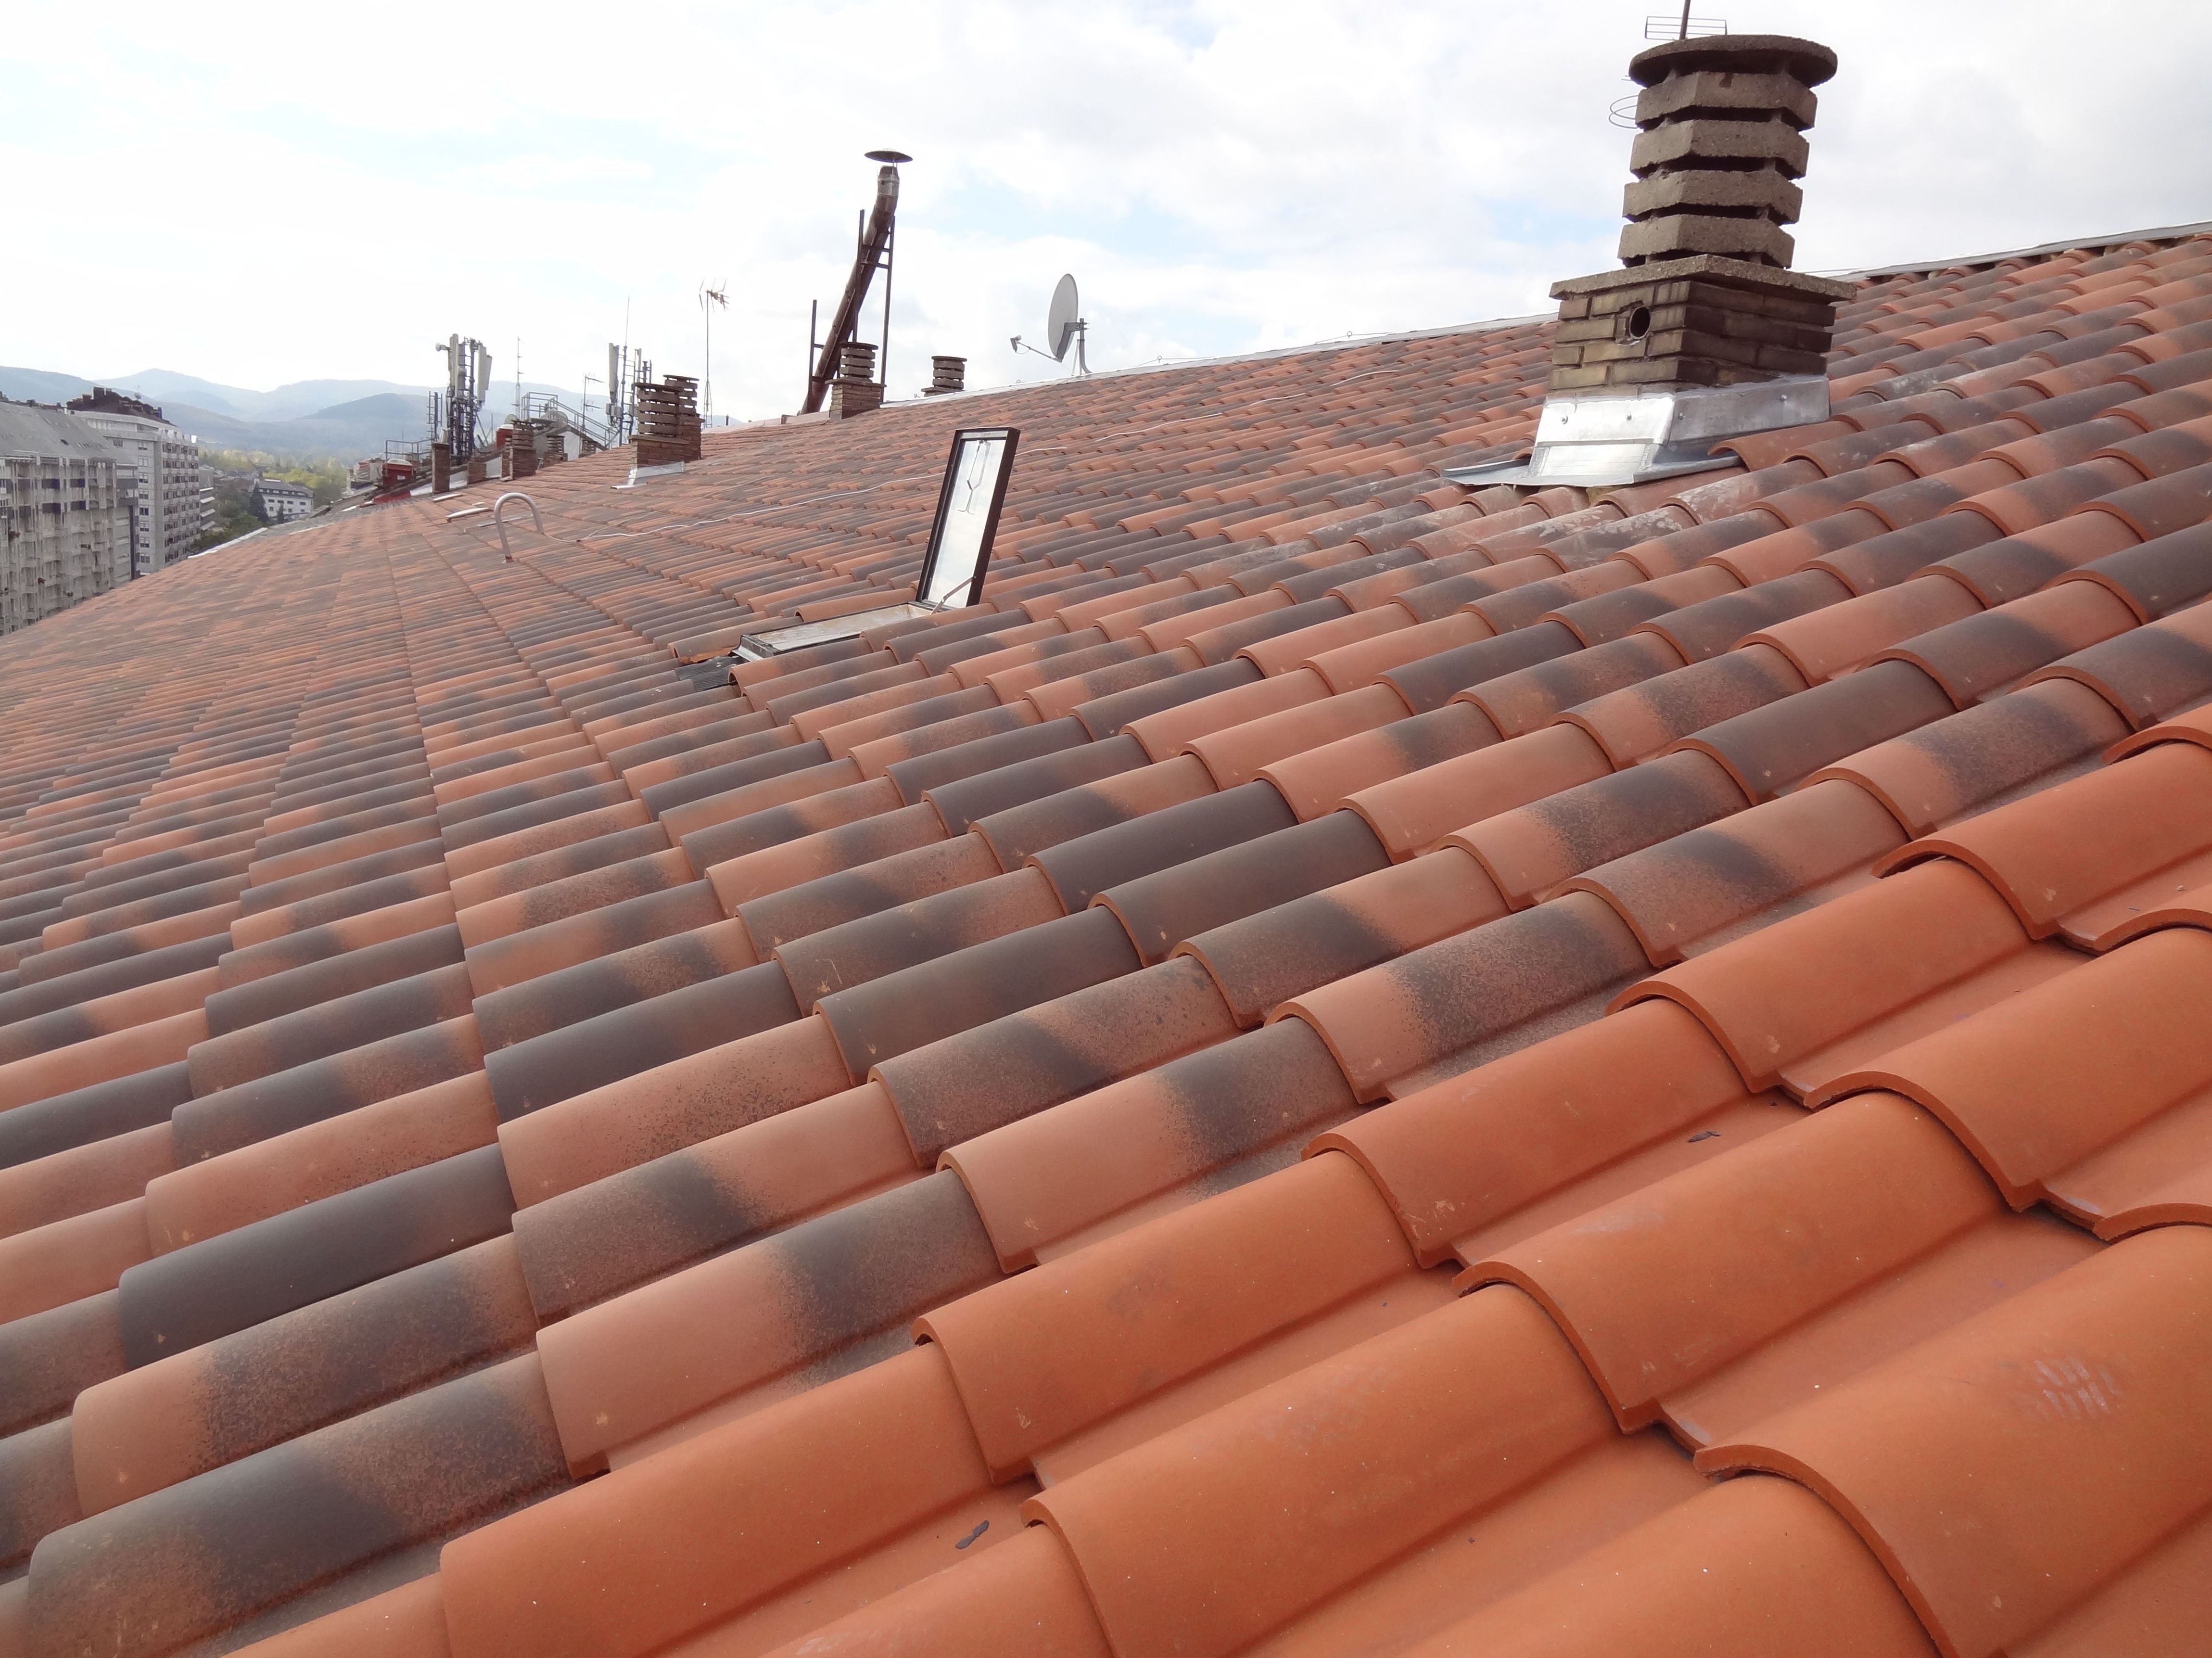 Rehabilitación de tejado en Av. Gasteiz, 51, Vitoria-Gasteiz, después de la obra